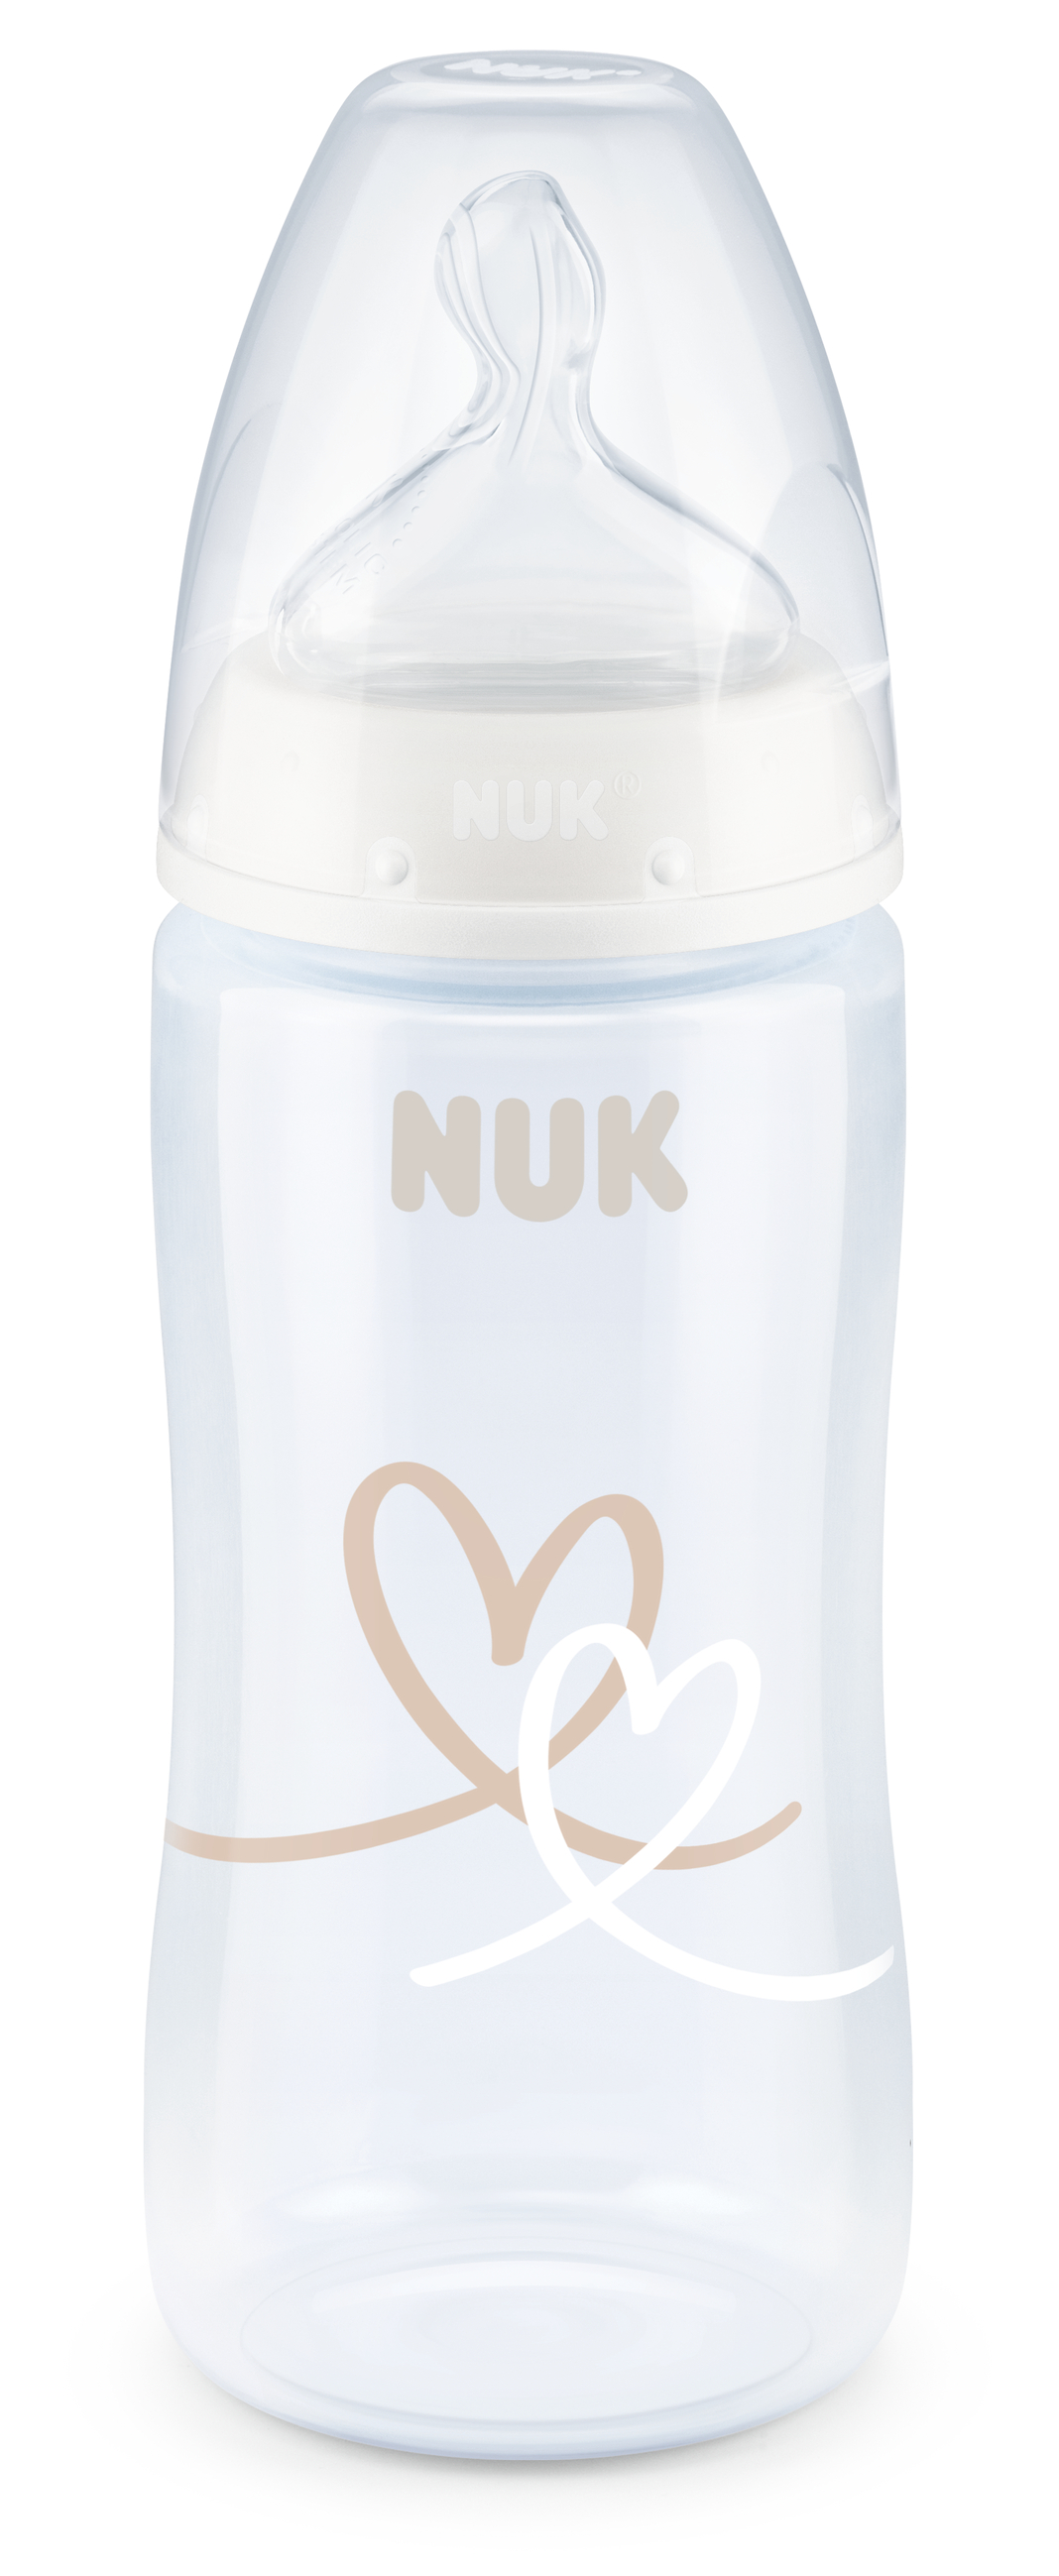 NUK | Dampf-Sterilisator Vario Express | inkl. 300ml First Choice Flasche 